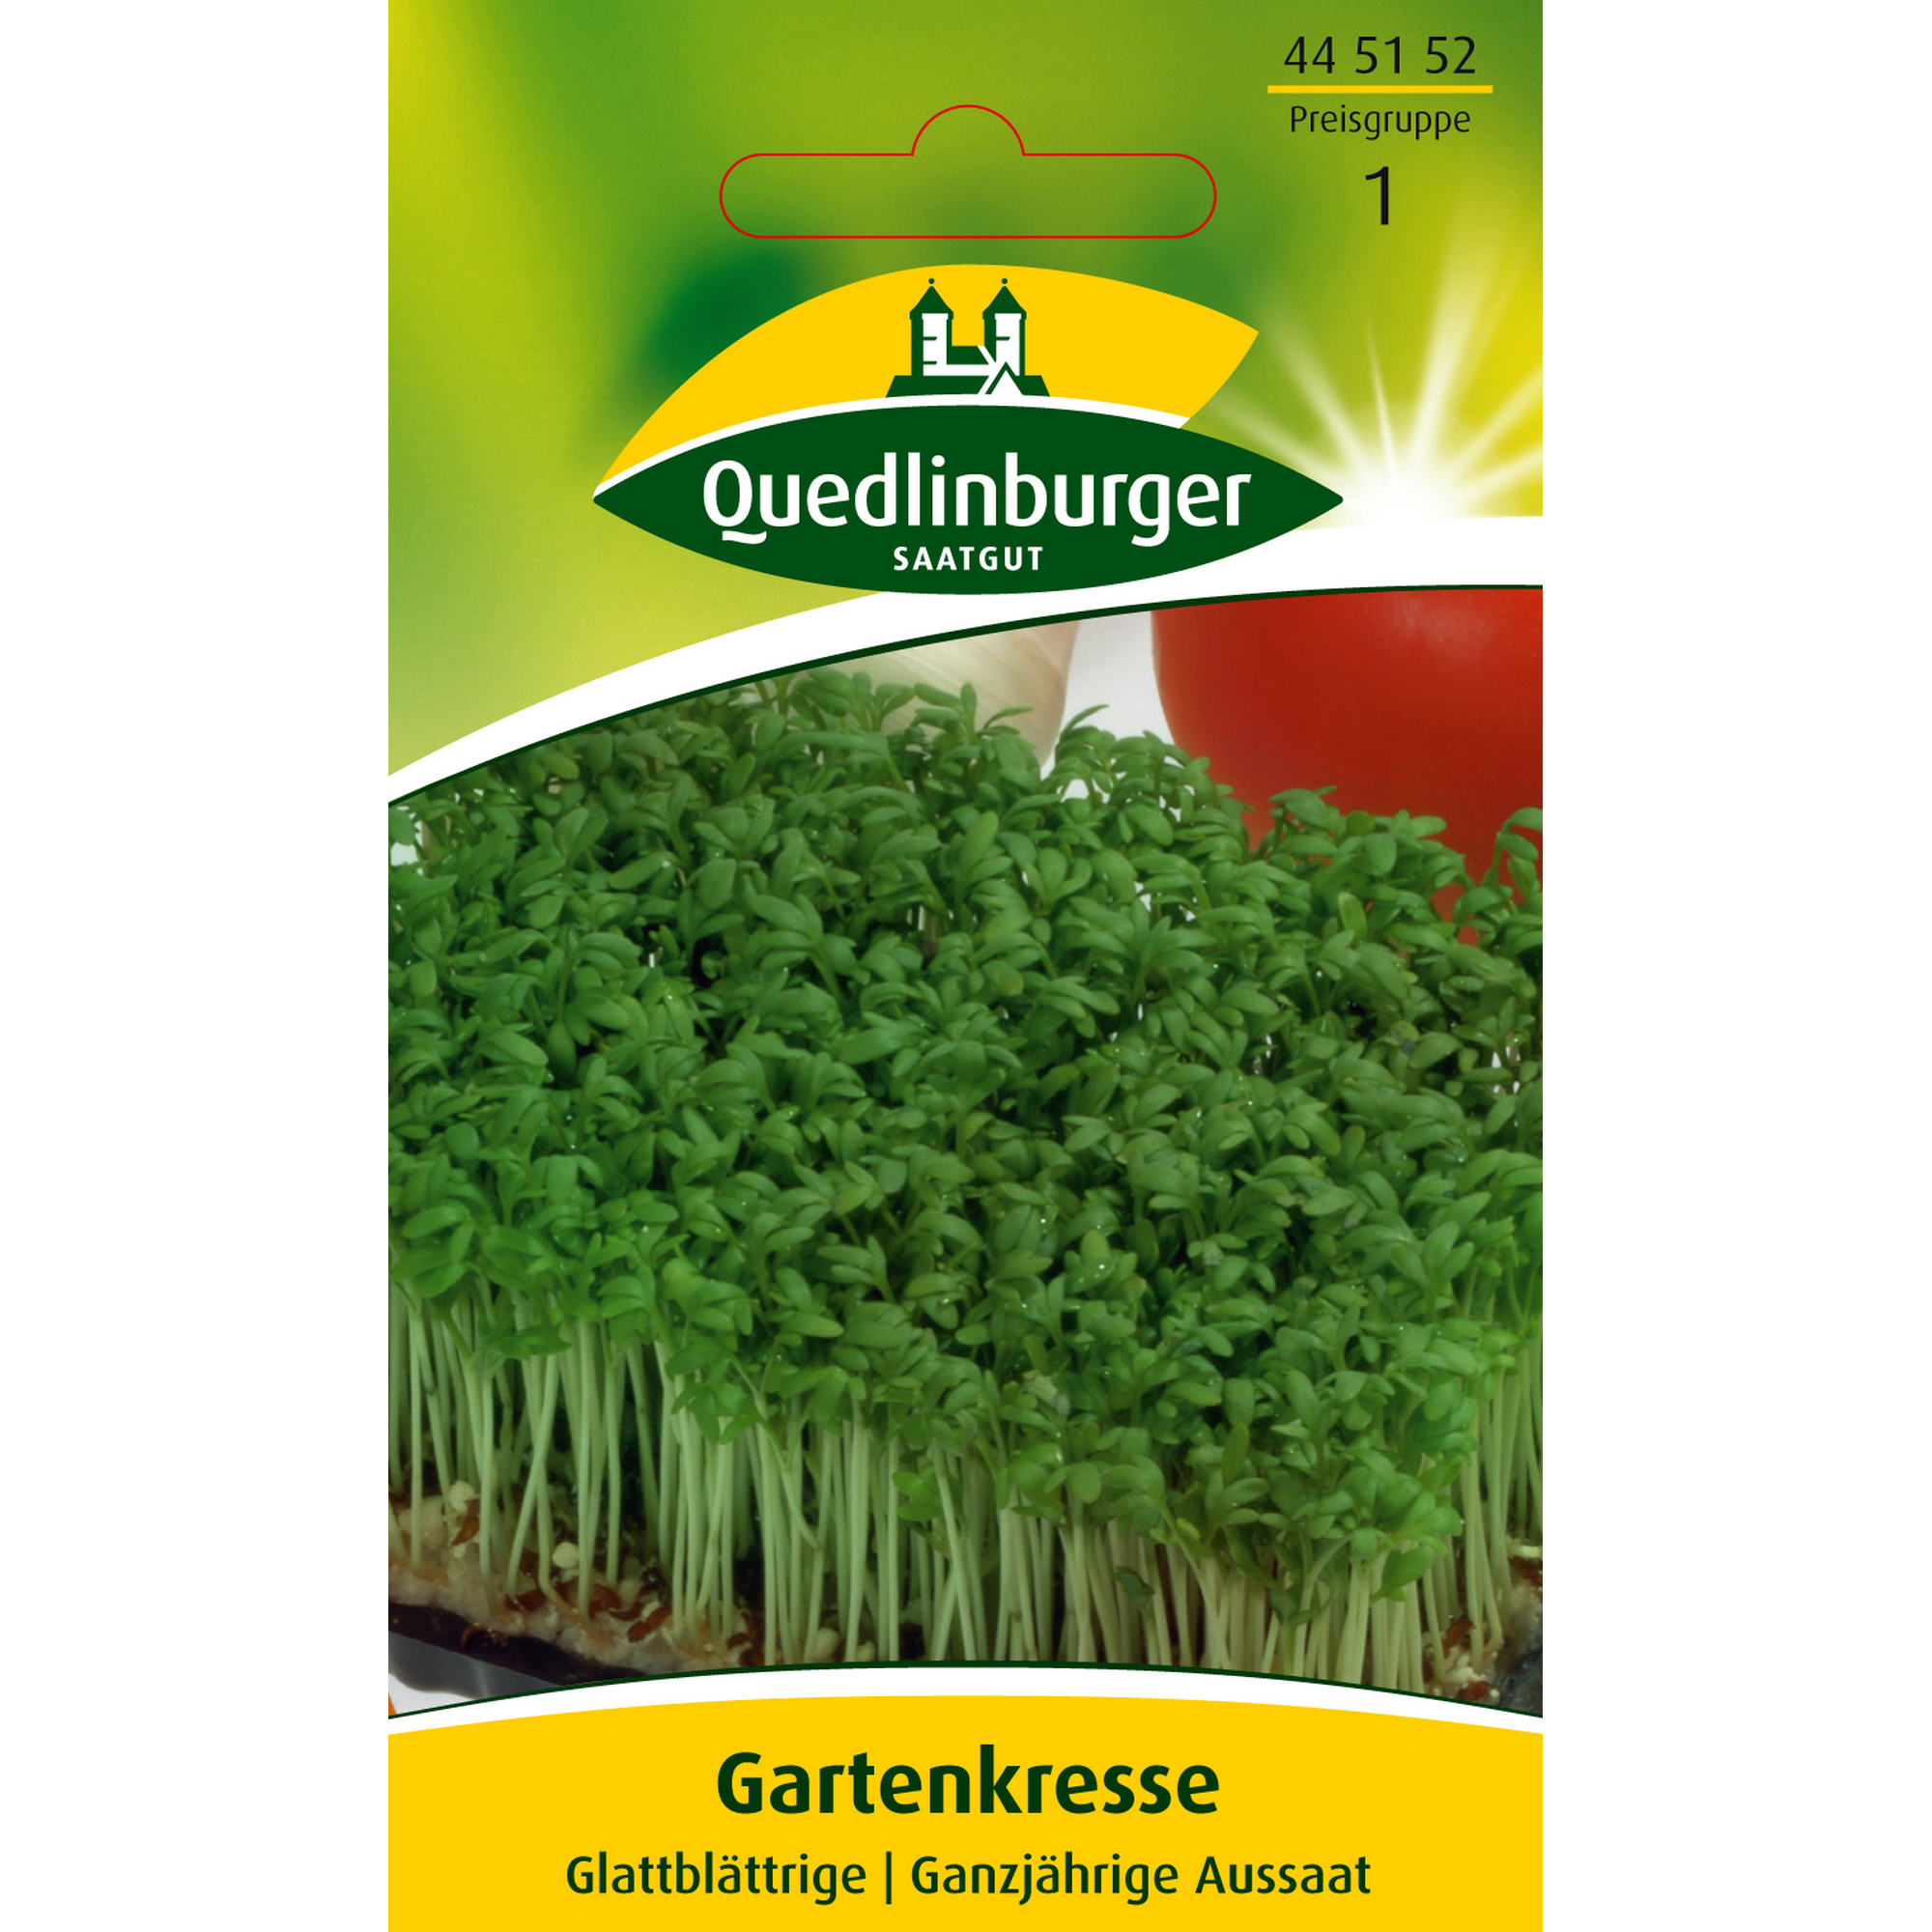 Gartenkresse Glattblättrige + product picture